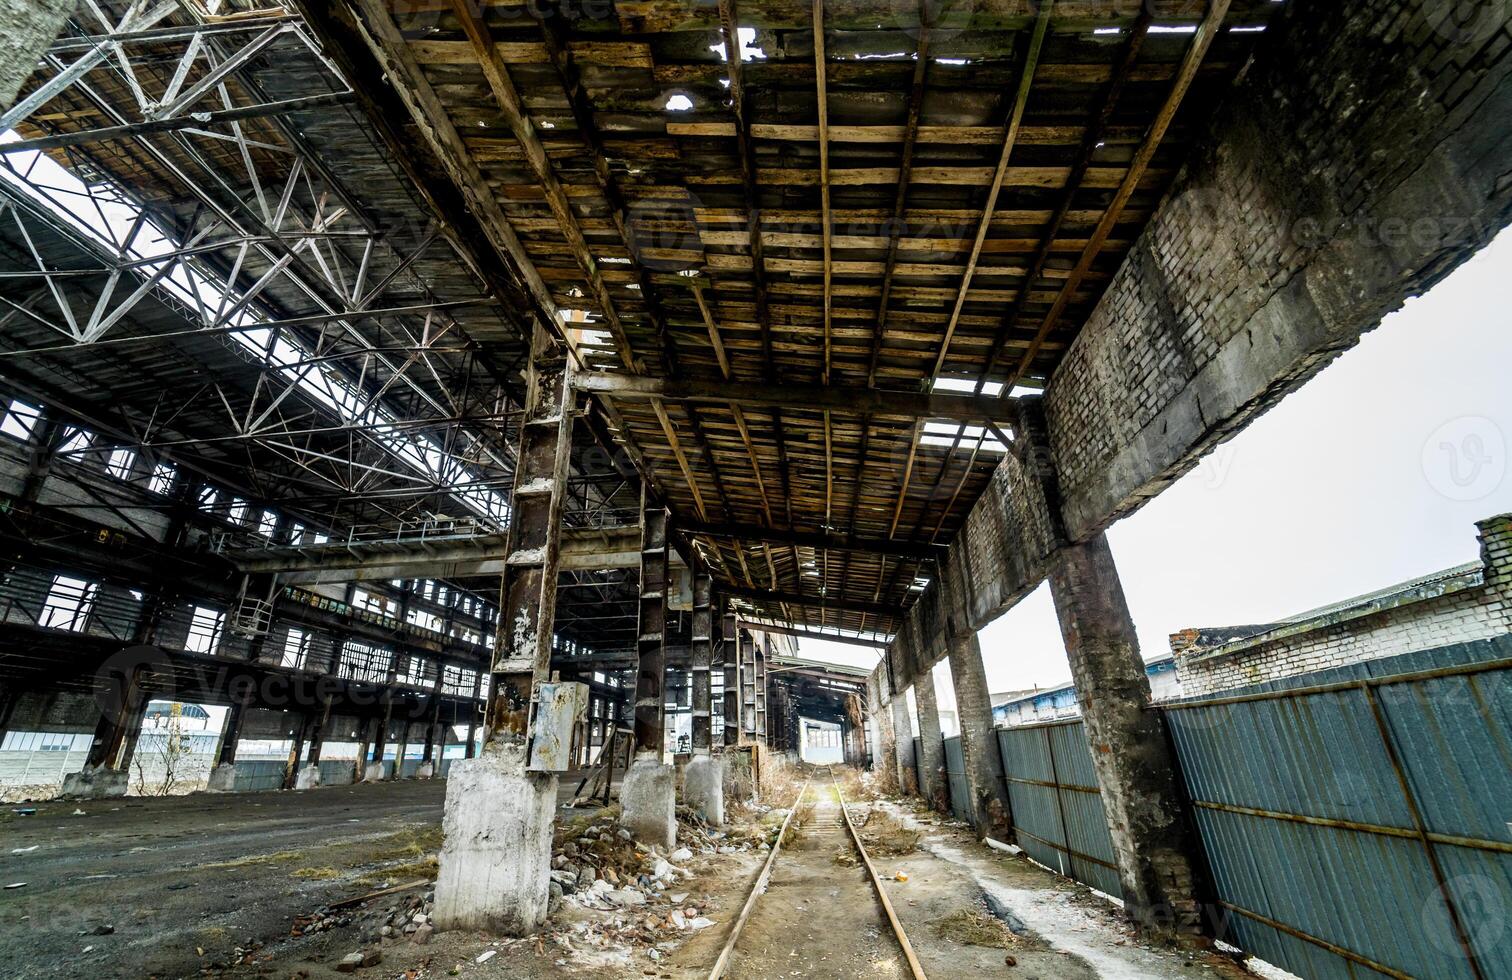 övergiven förstörd industriell fabrik byggnad, ruiner och rivning begrepp foto